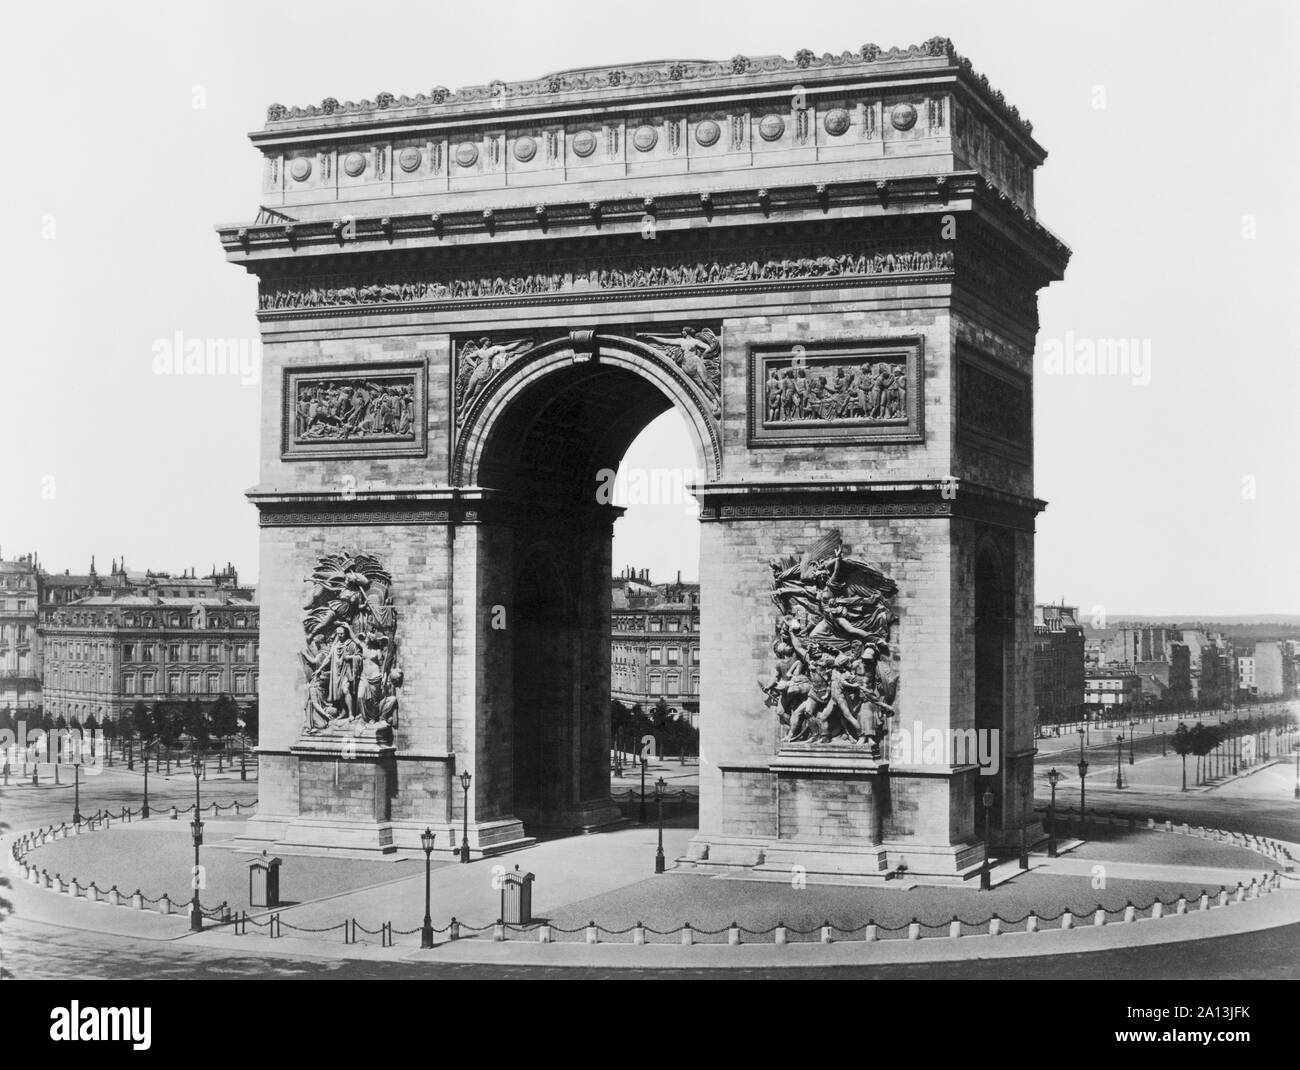 The Arc de Triomphe de l'Etoile, Paris, France. Stock Photo